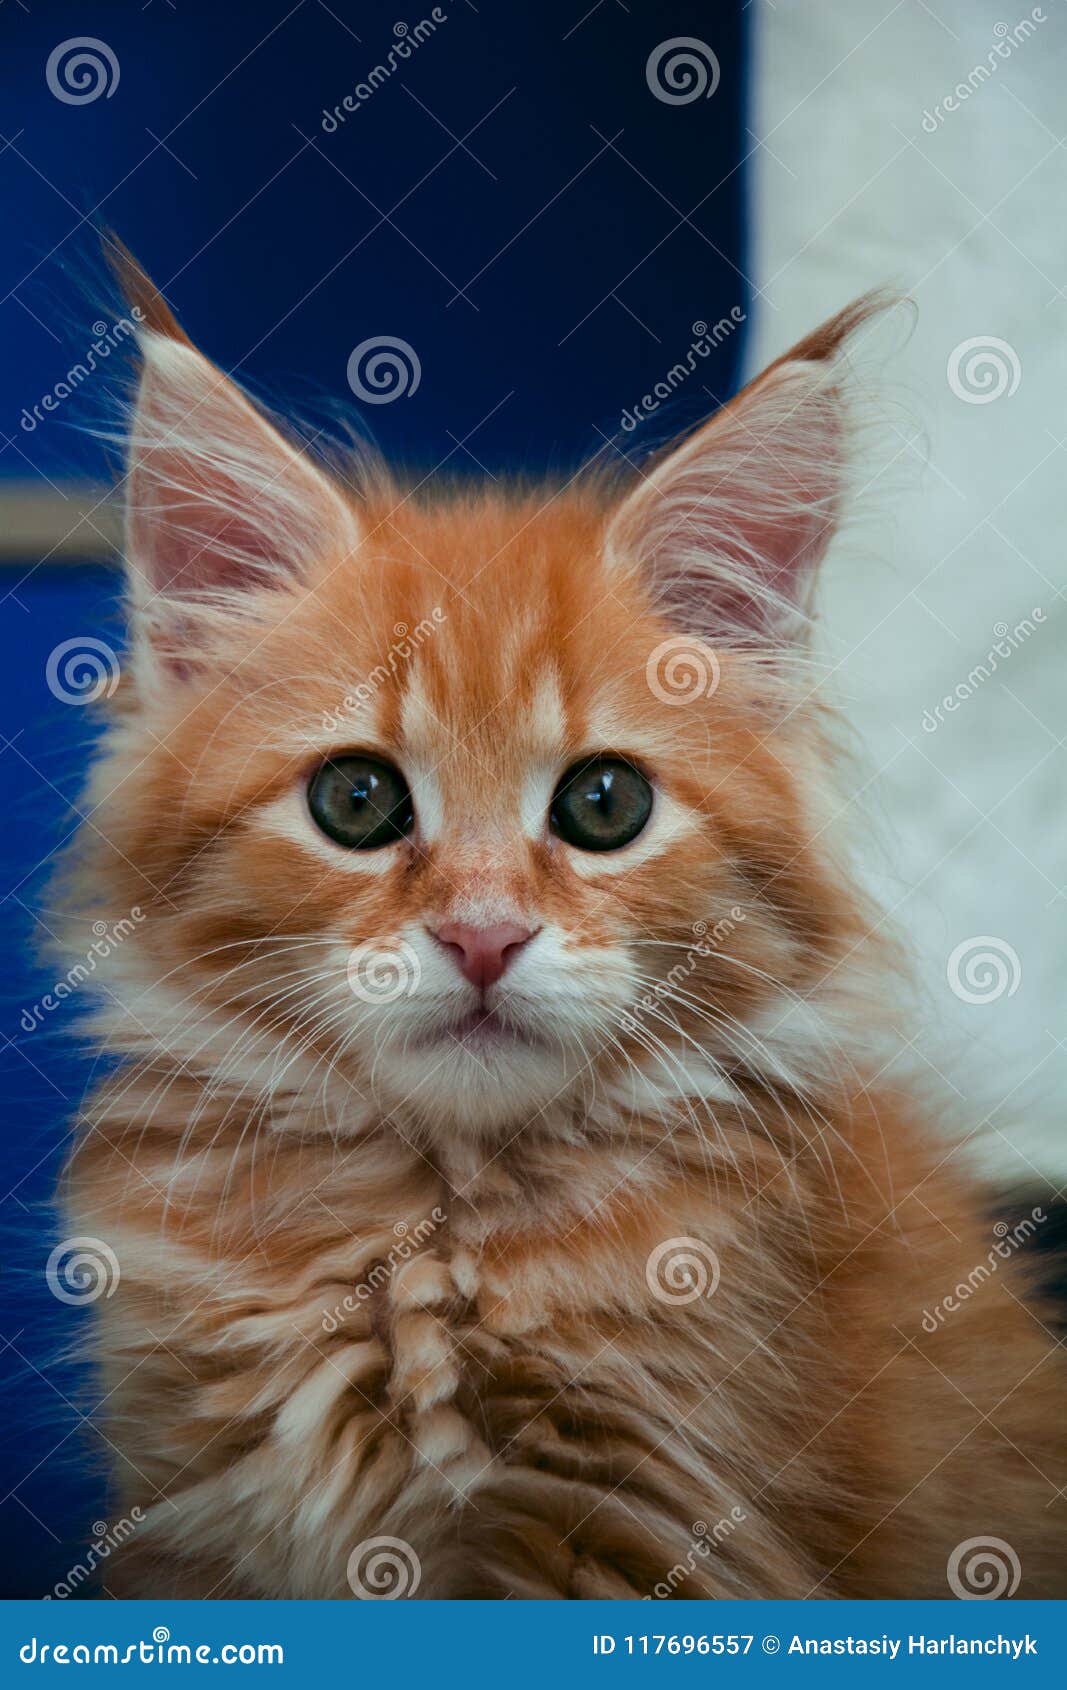 ginger kittens for sale